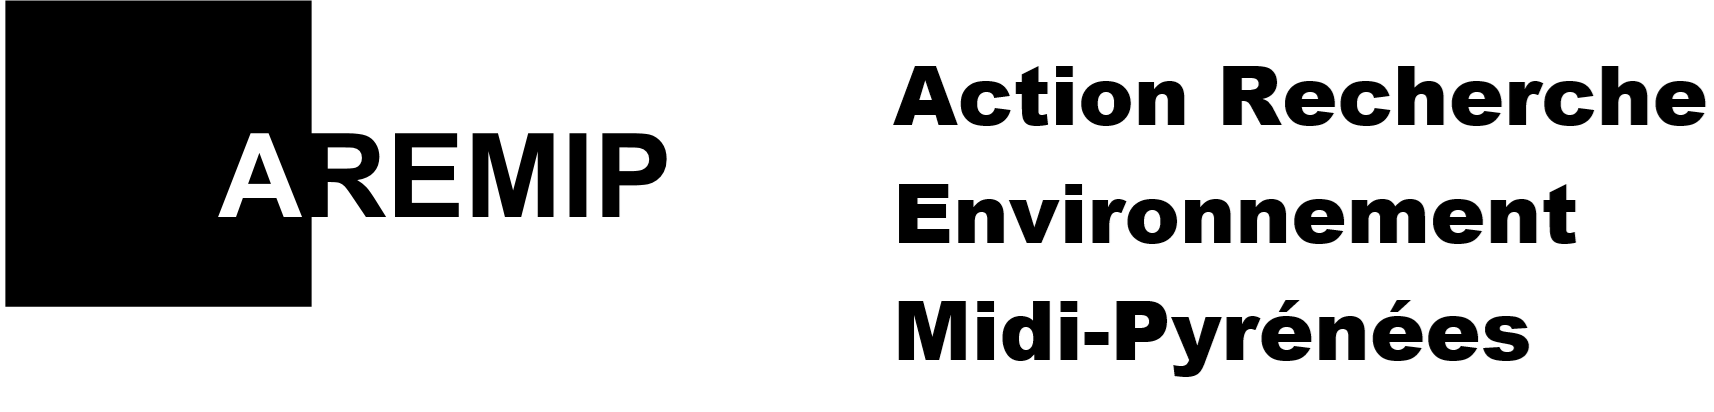 Action Recherche Environnement Midi-Pyrénées (AREMIP)